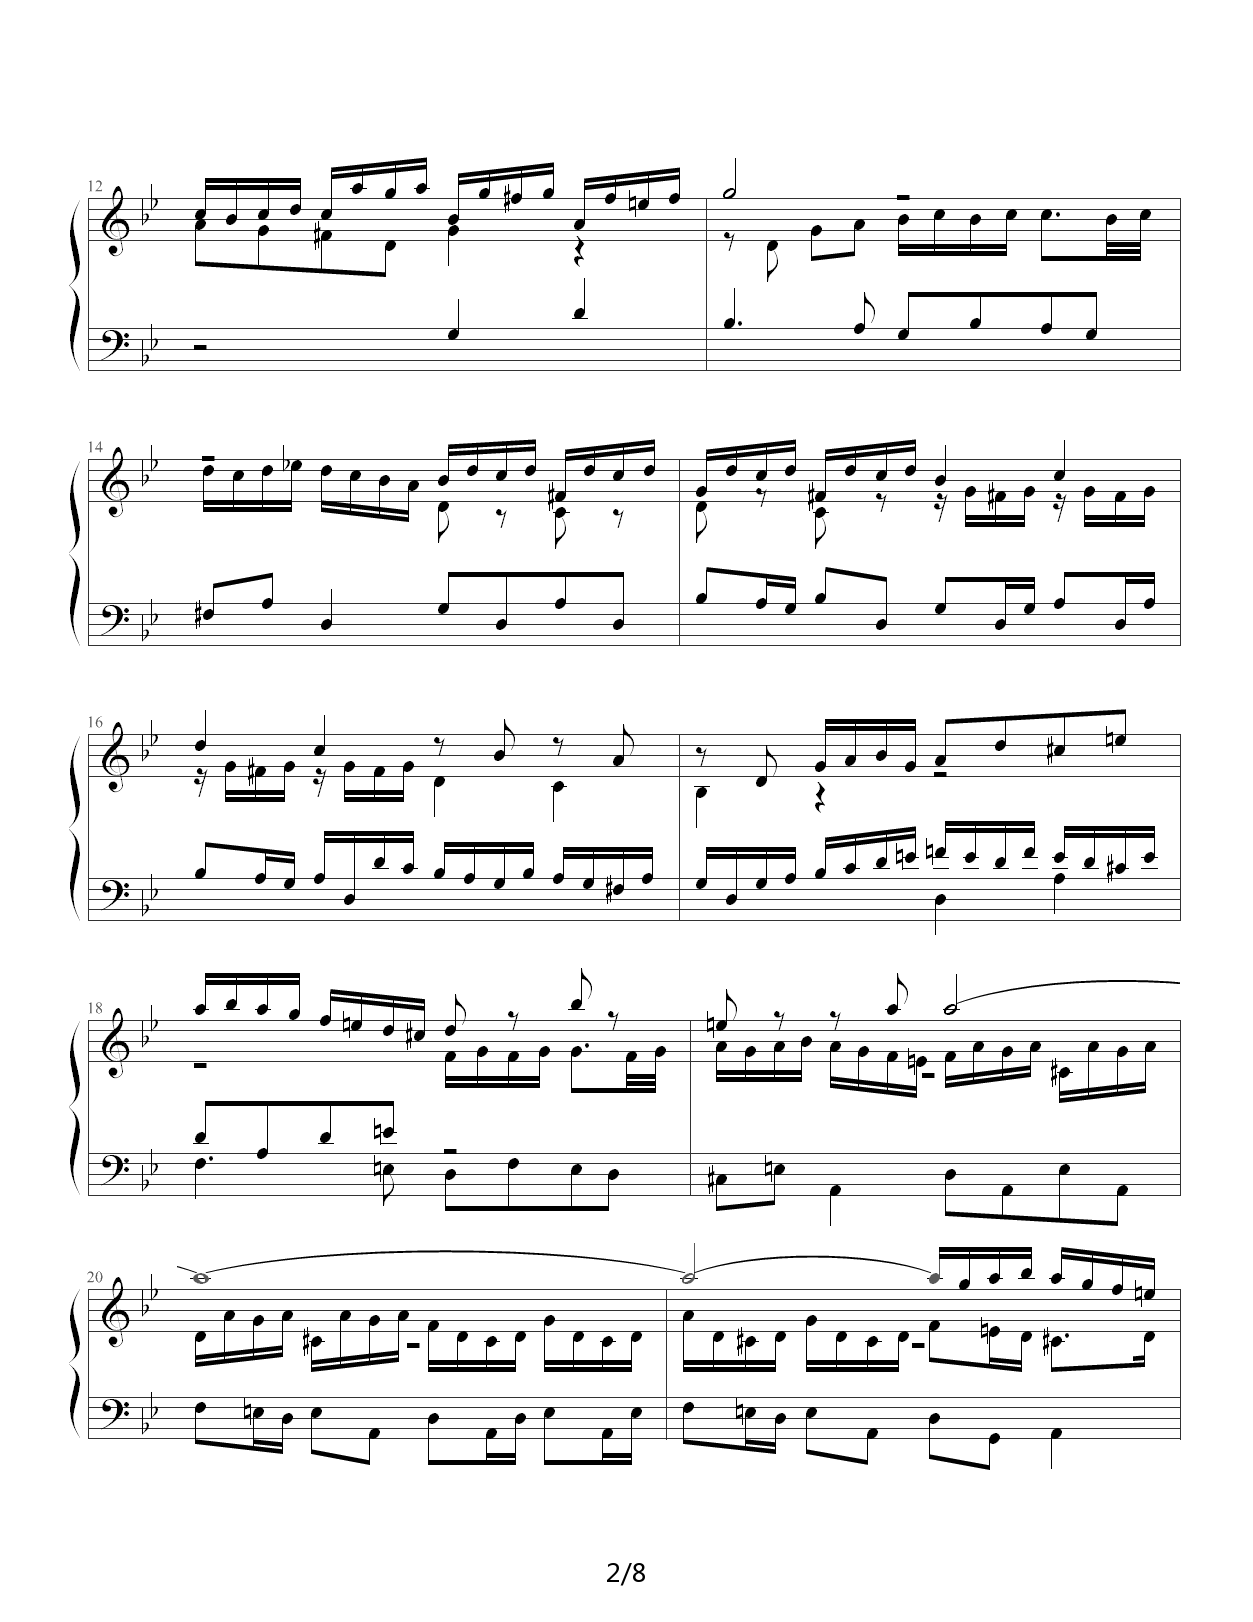 Fugue in G Minor钢琴谱|Fugue in G Minor最新钢琴谱|Fugue in G Minor钢琴谱下载